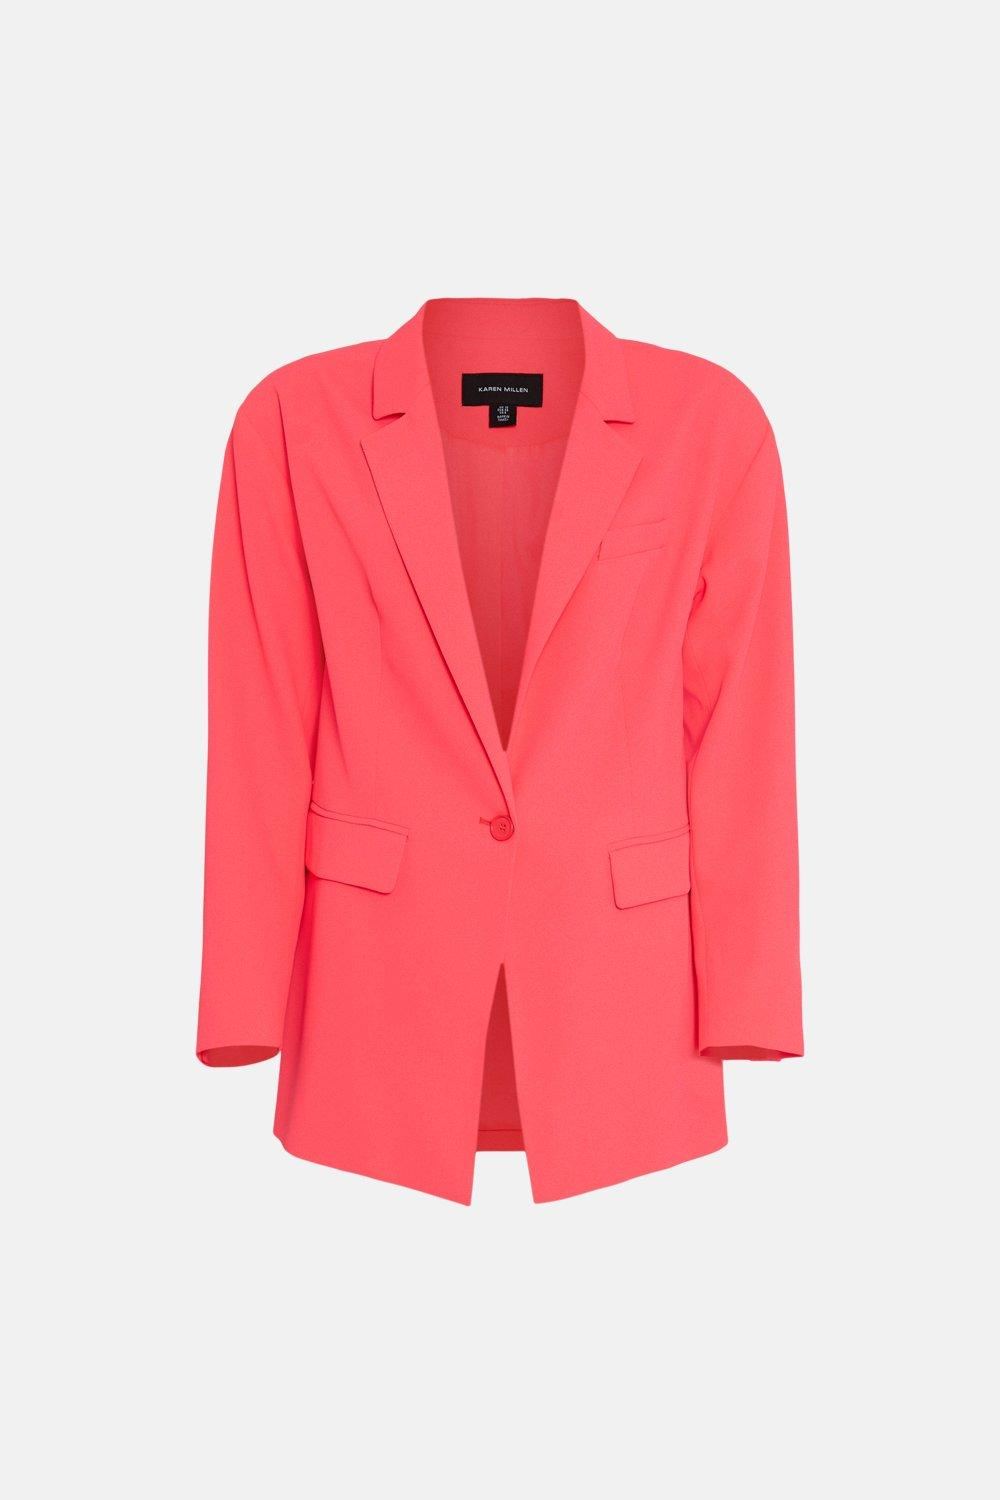 Karen Millen Soft Twill Oversized Tailored Blazer €209